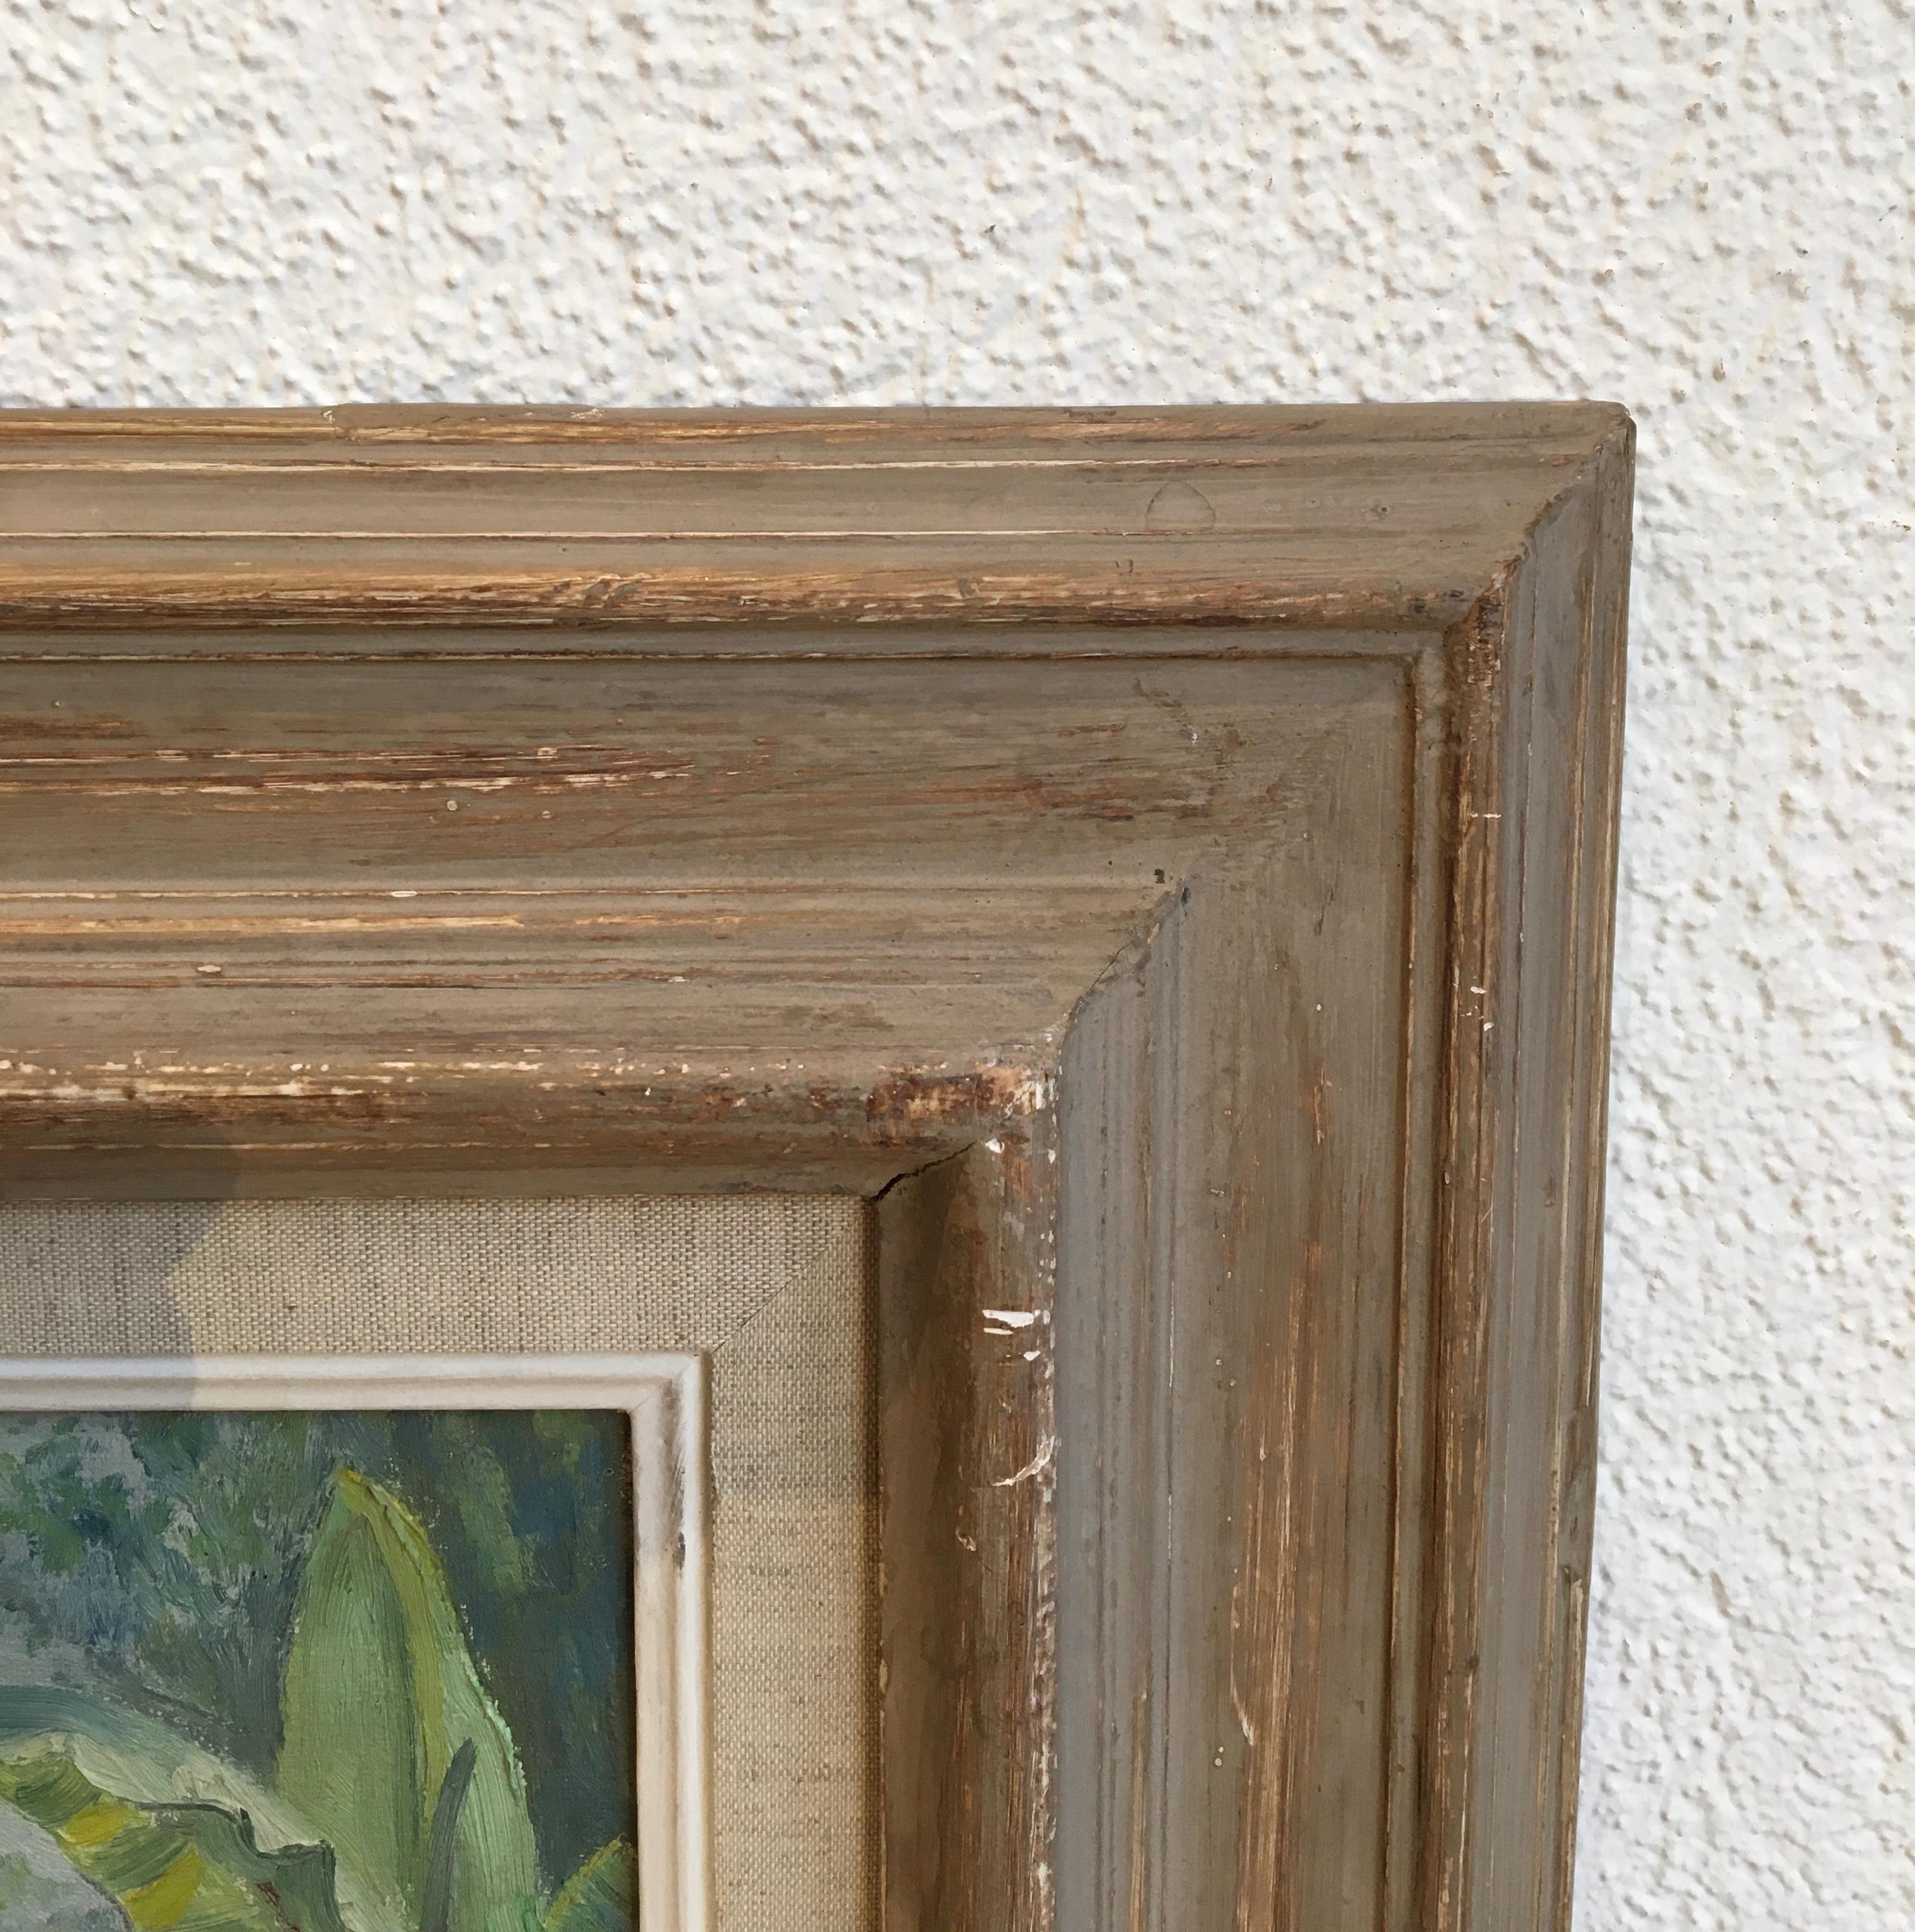 Work on canvas
Beige wooden frame
52 x 60.5 x 2.5 cm